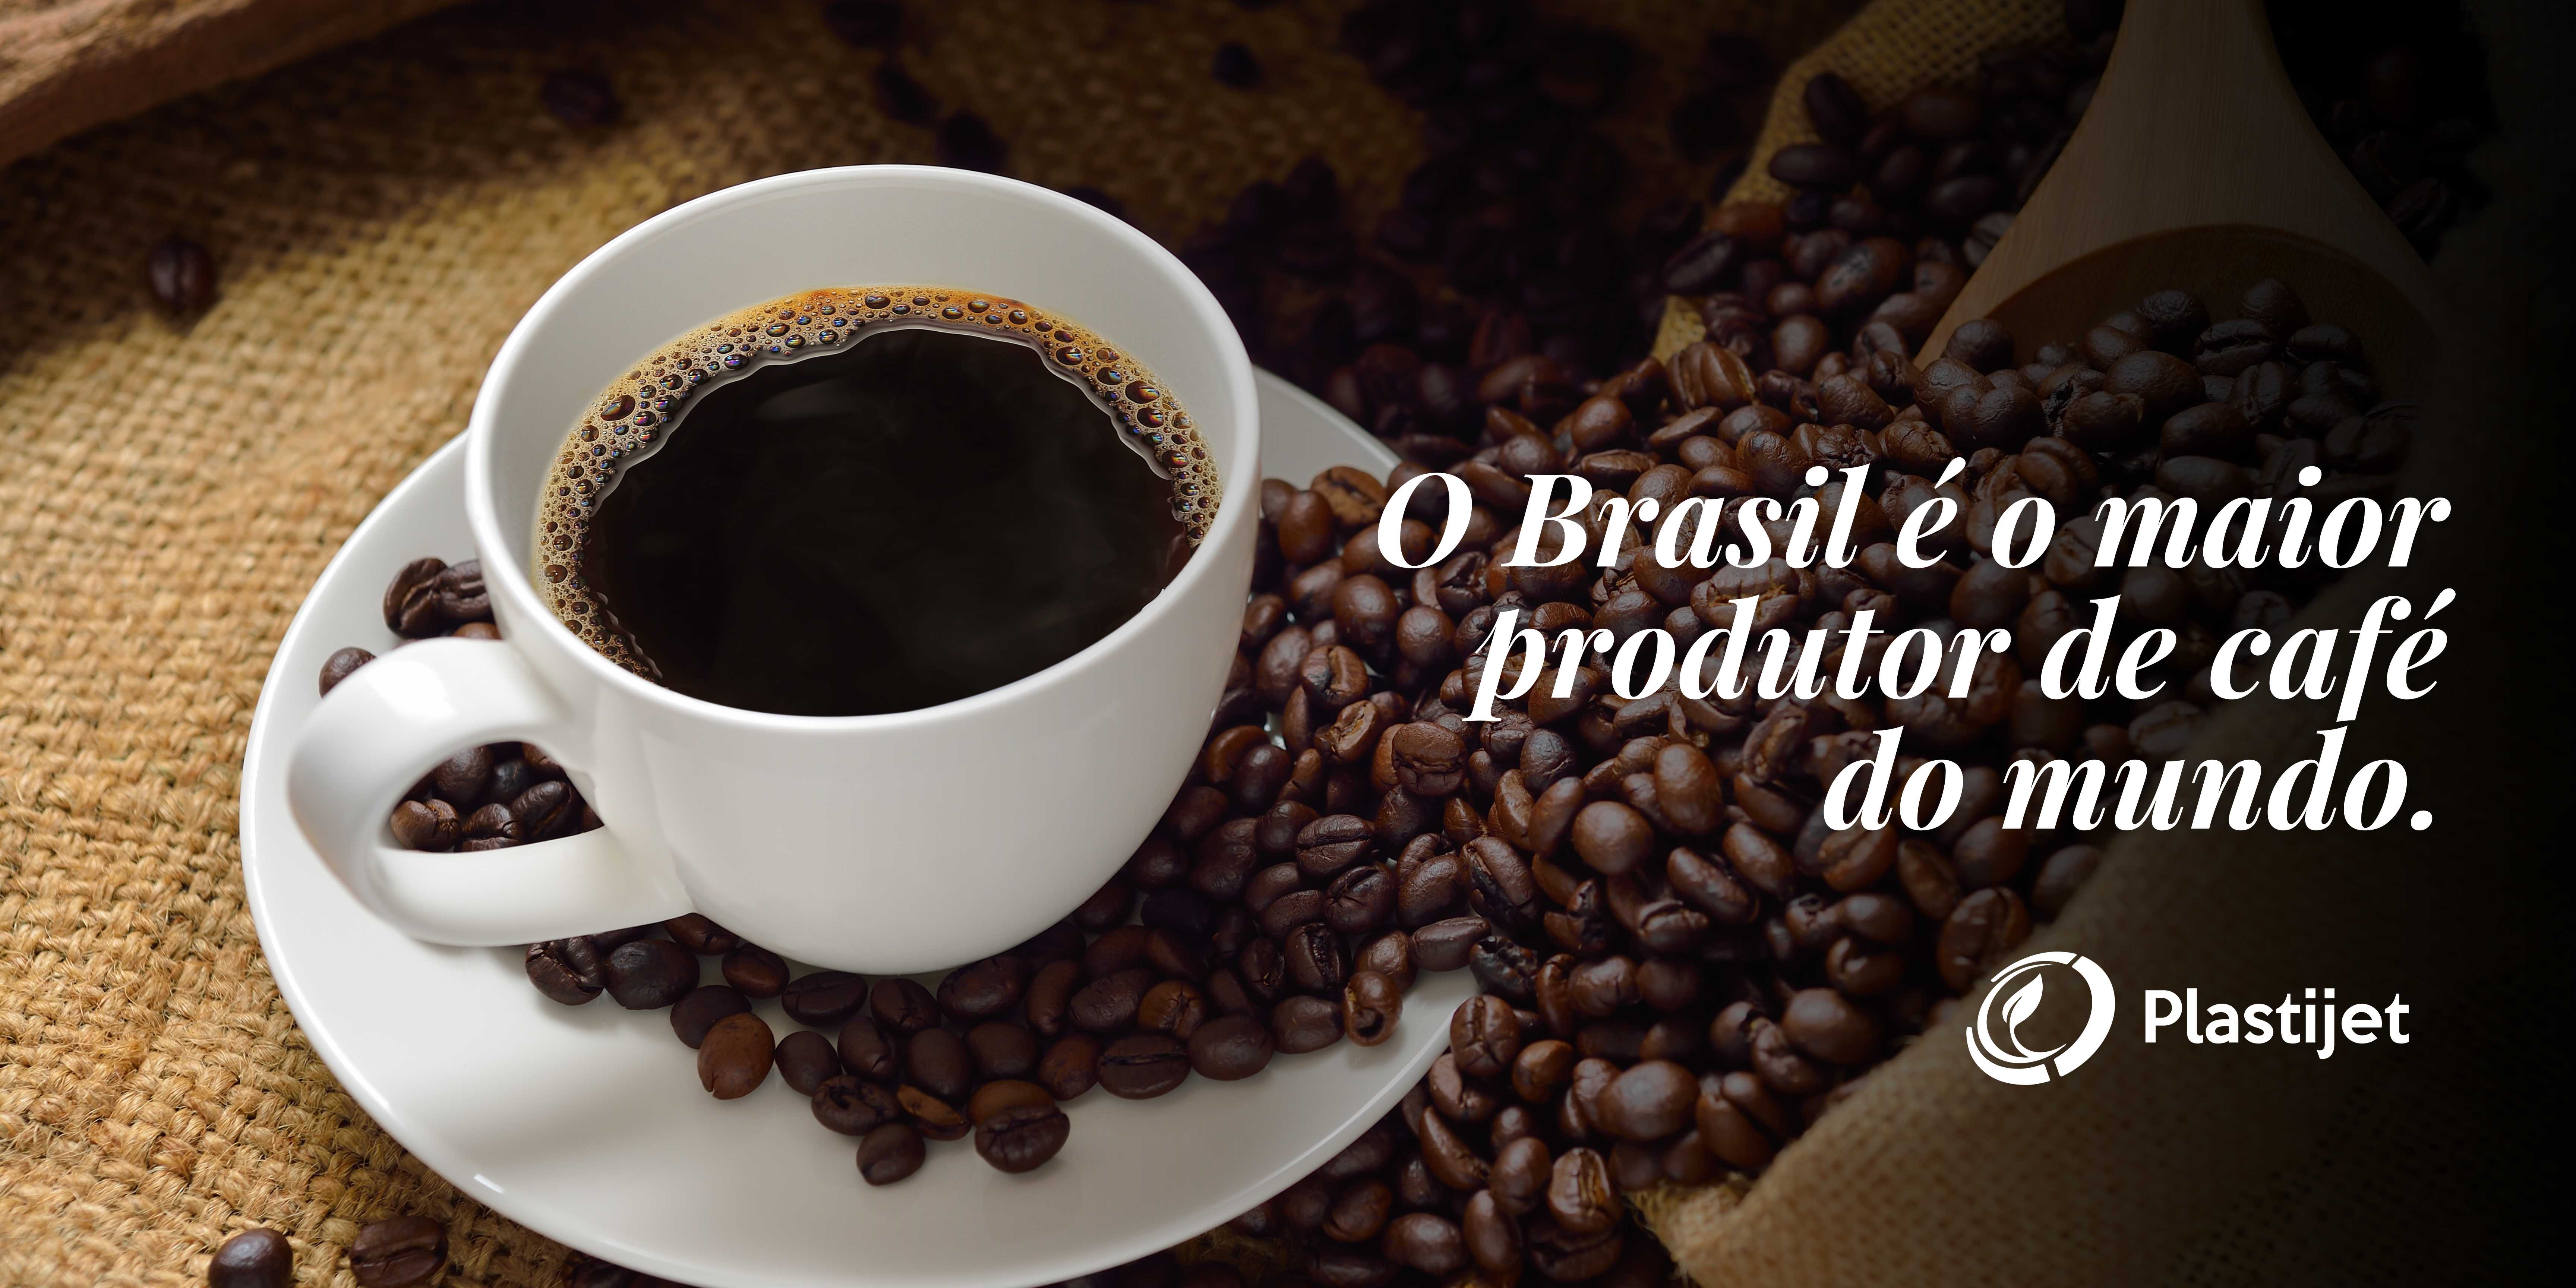 O BRASIL É O MAIOR PRODUTOR DE CAFÉ DO MUNDO.